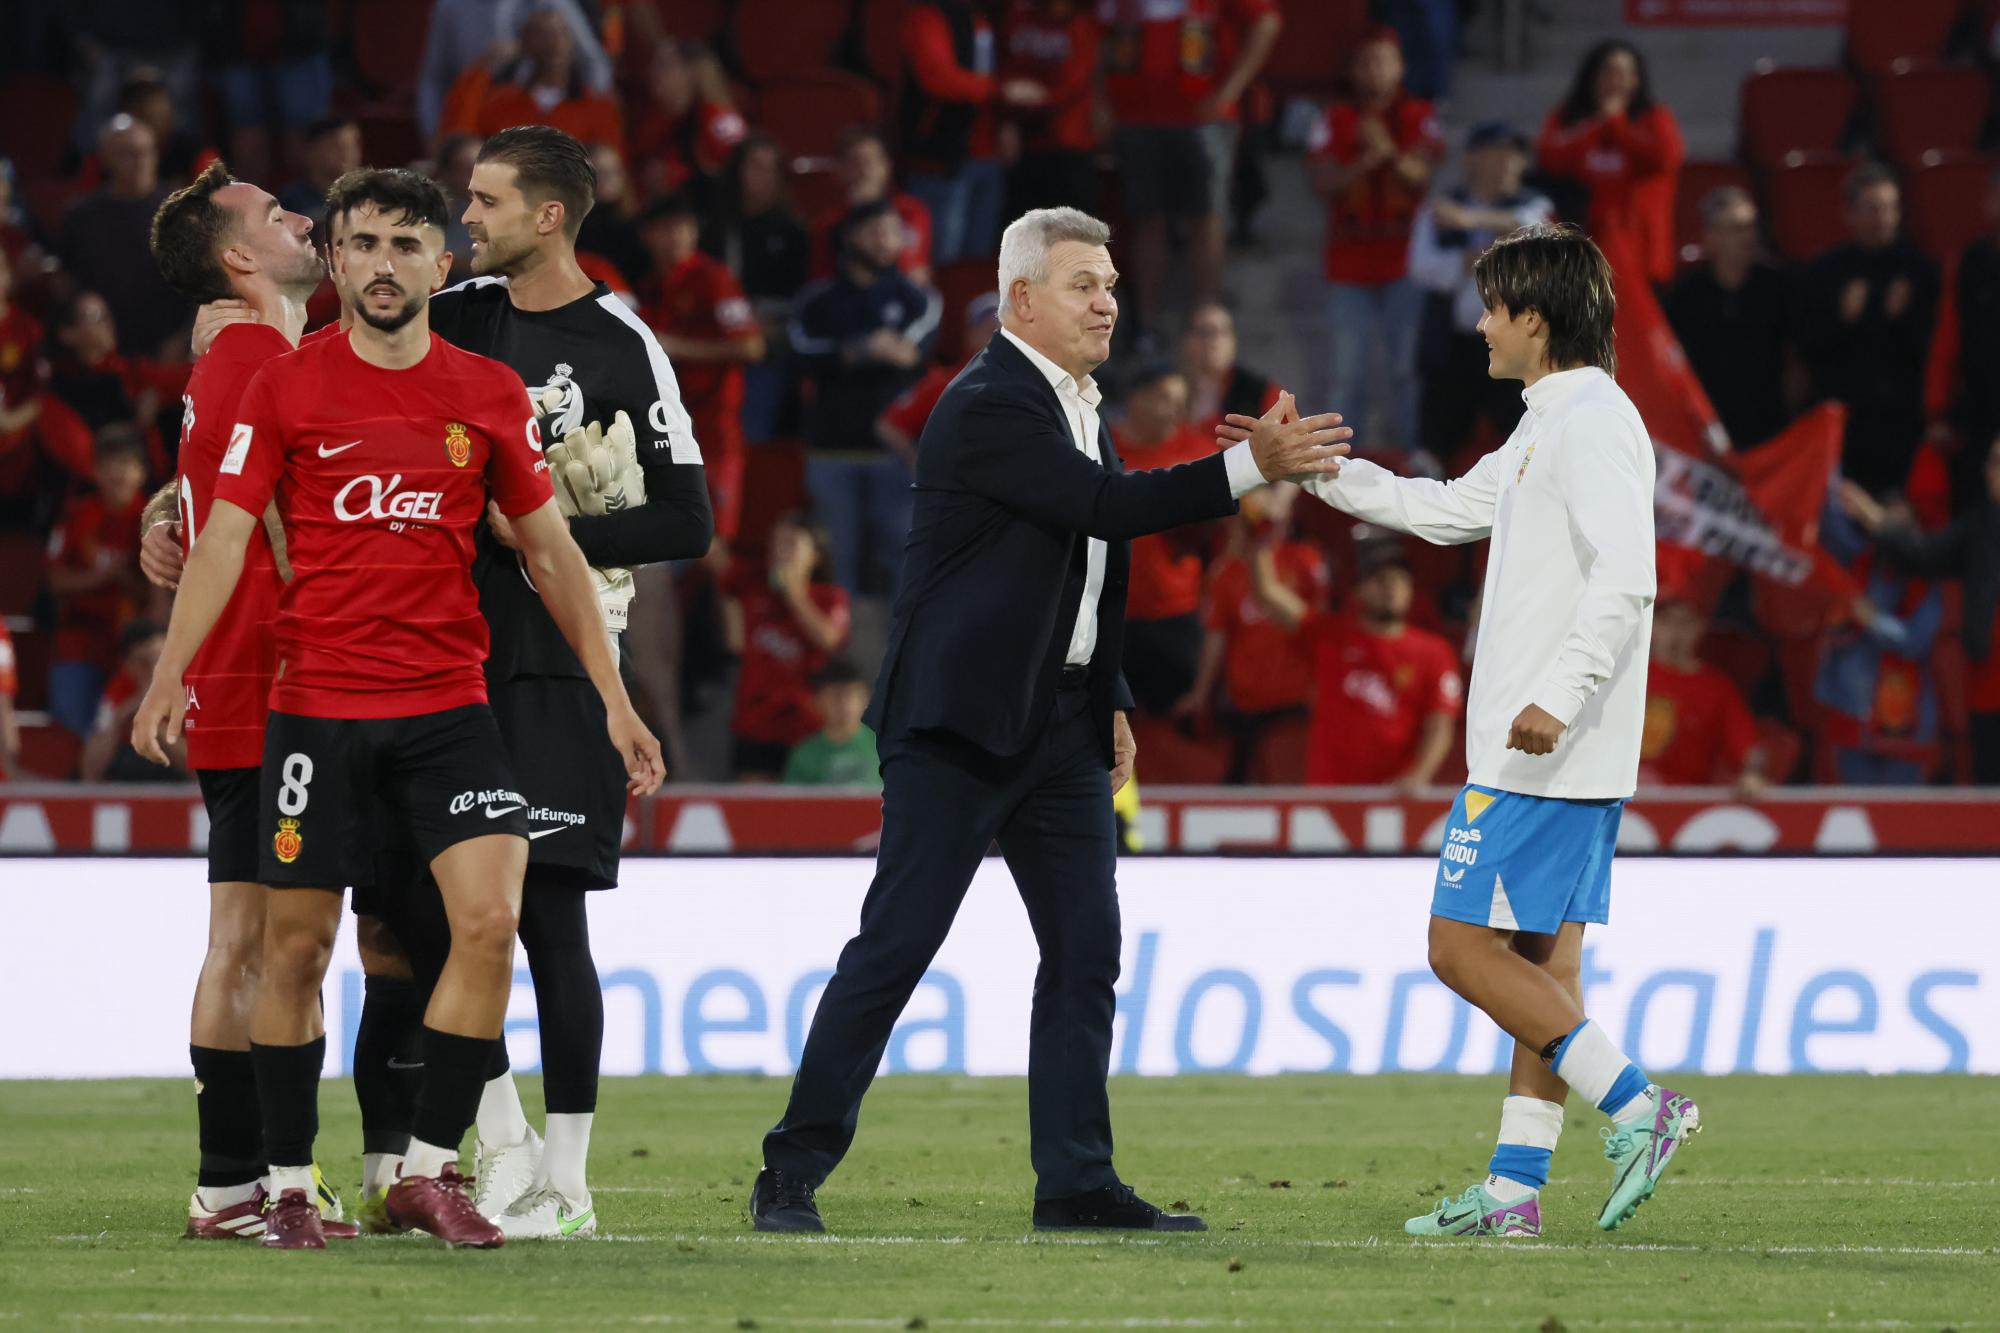 El estratega mexicano, Javier Aguirre, ha llevado al Mallorca a la salvación en LaLiga española tras un emocionante empate 2-2 contra el Almería. El equipo balear se aseguró su lugar en la máxima